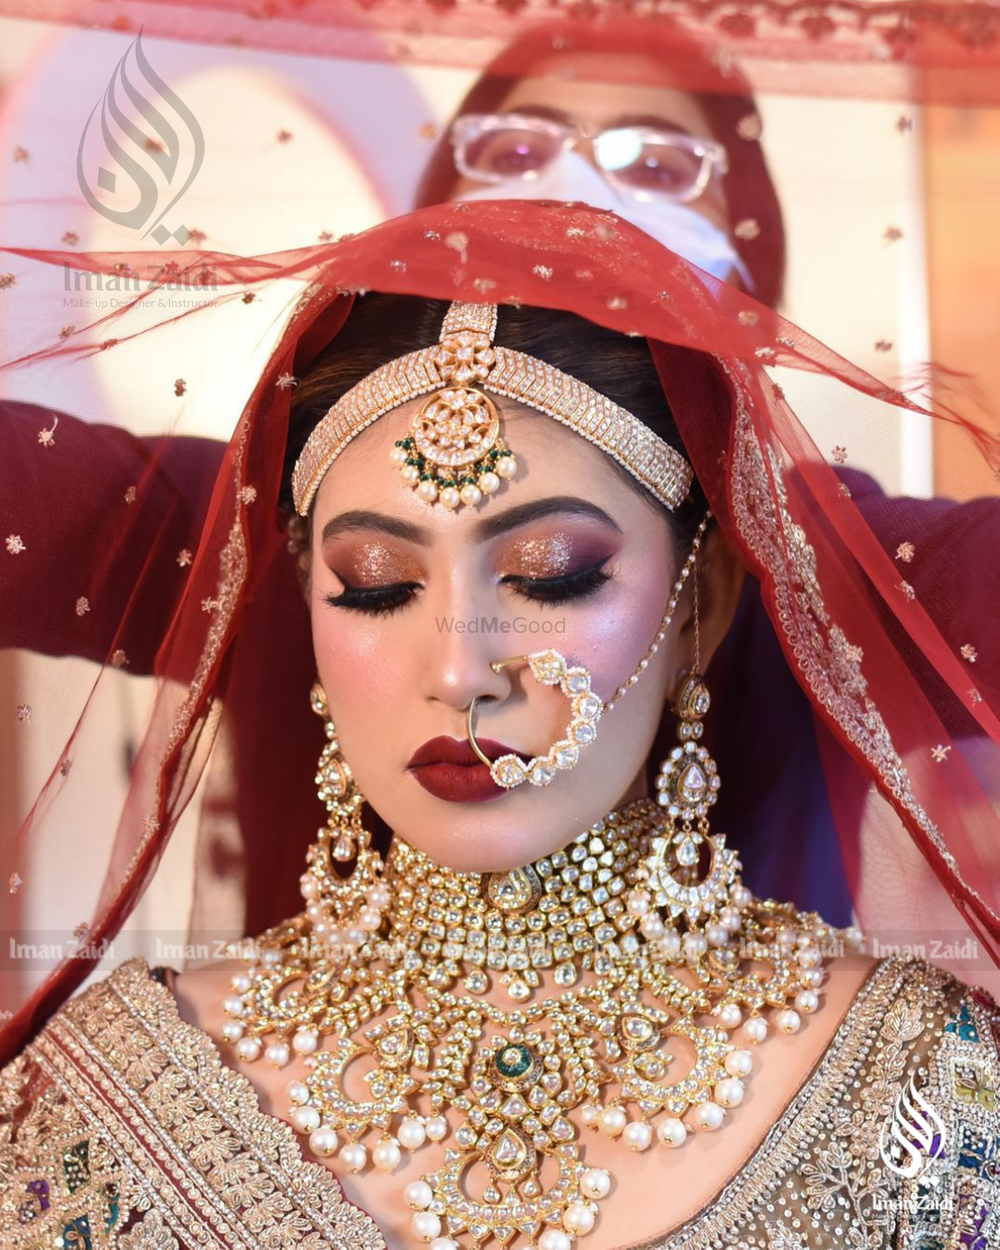 Photo By Makeup by Iman Zaidi - Bridal Makeup